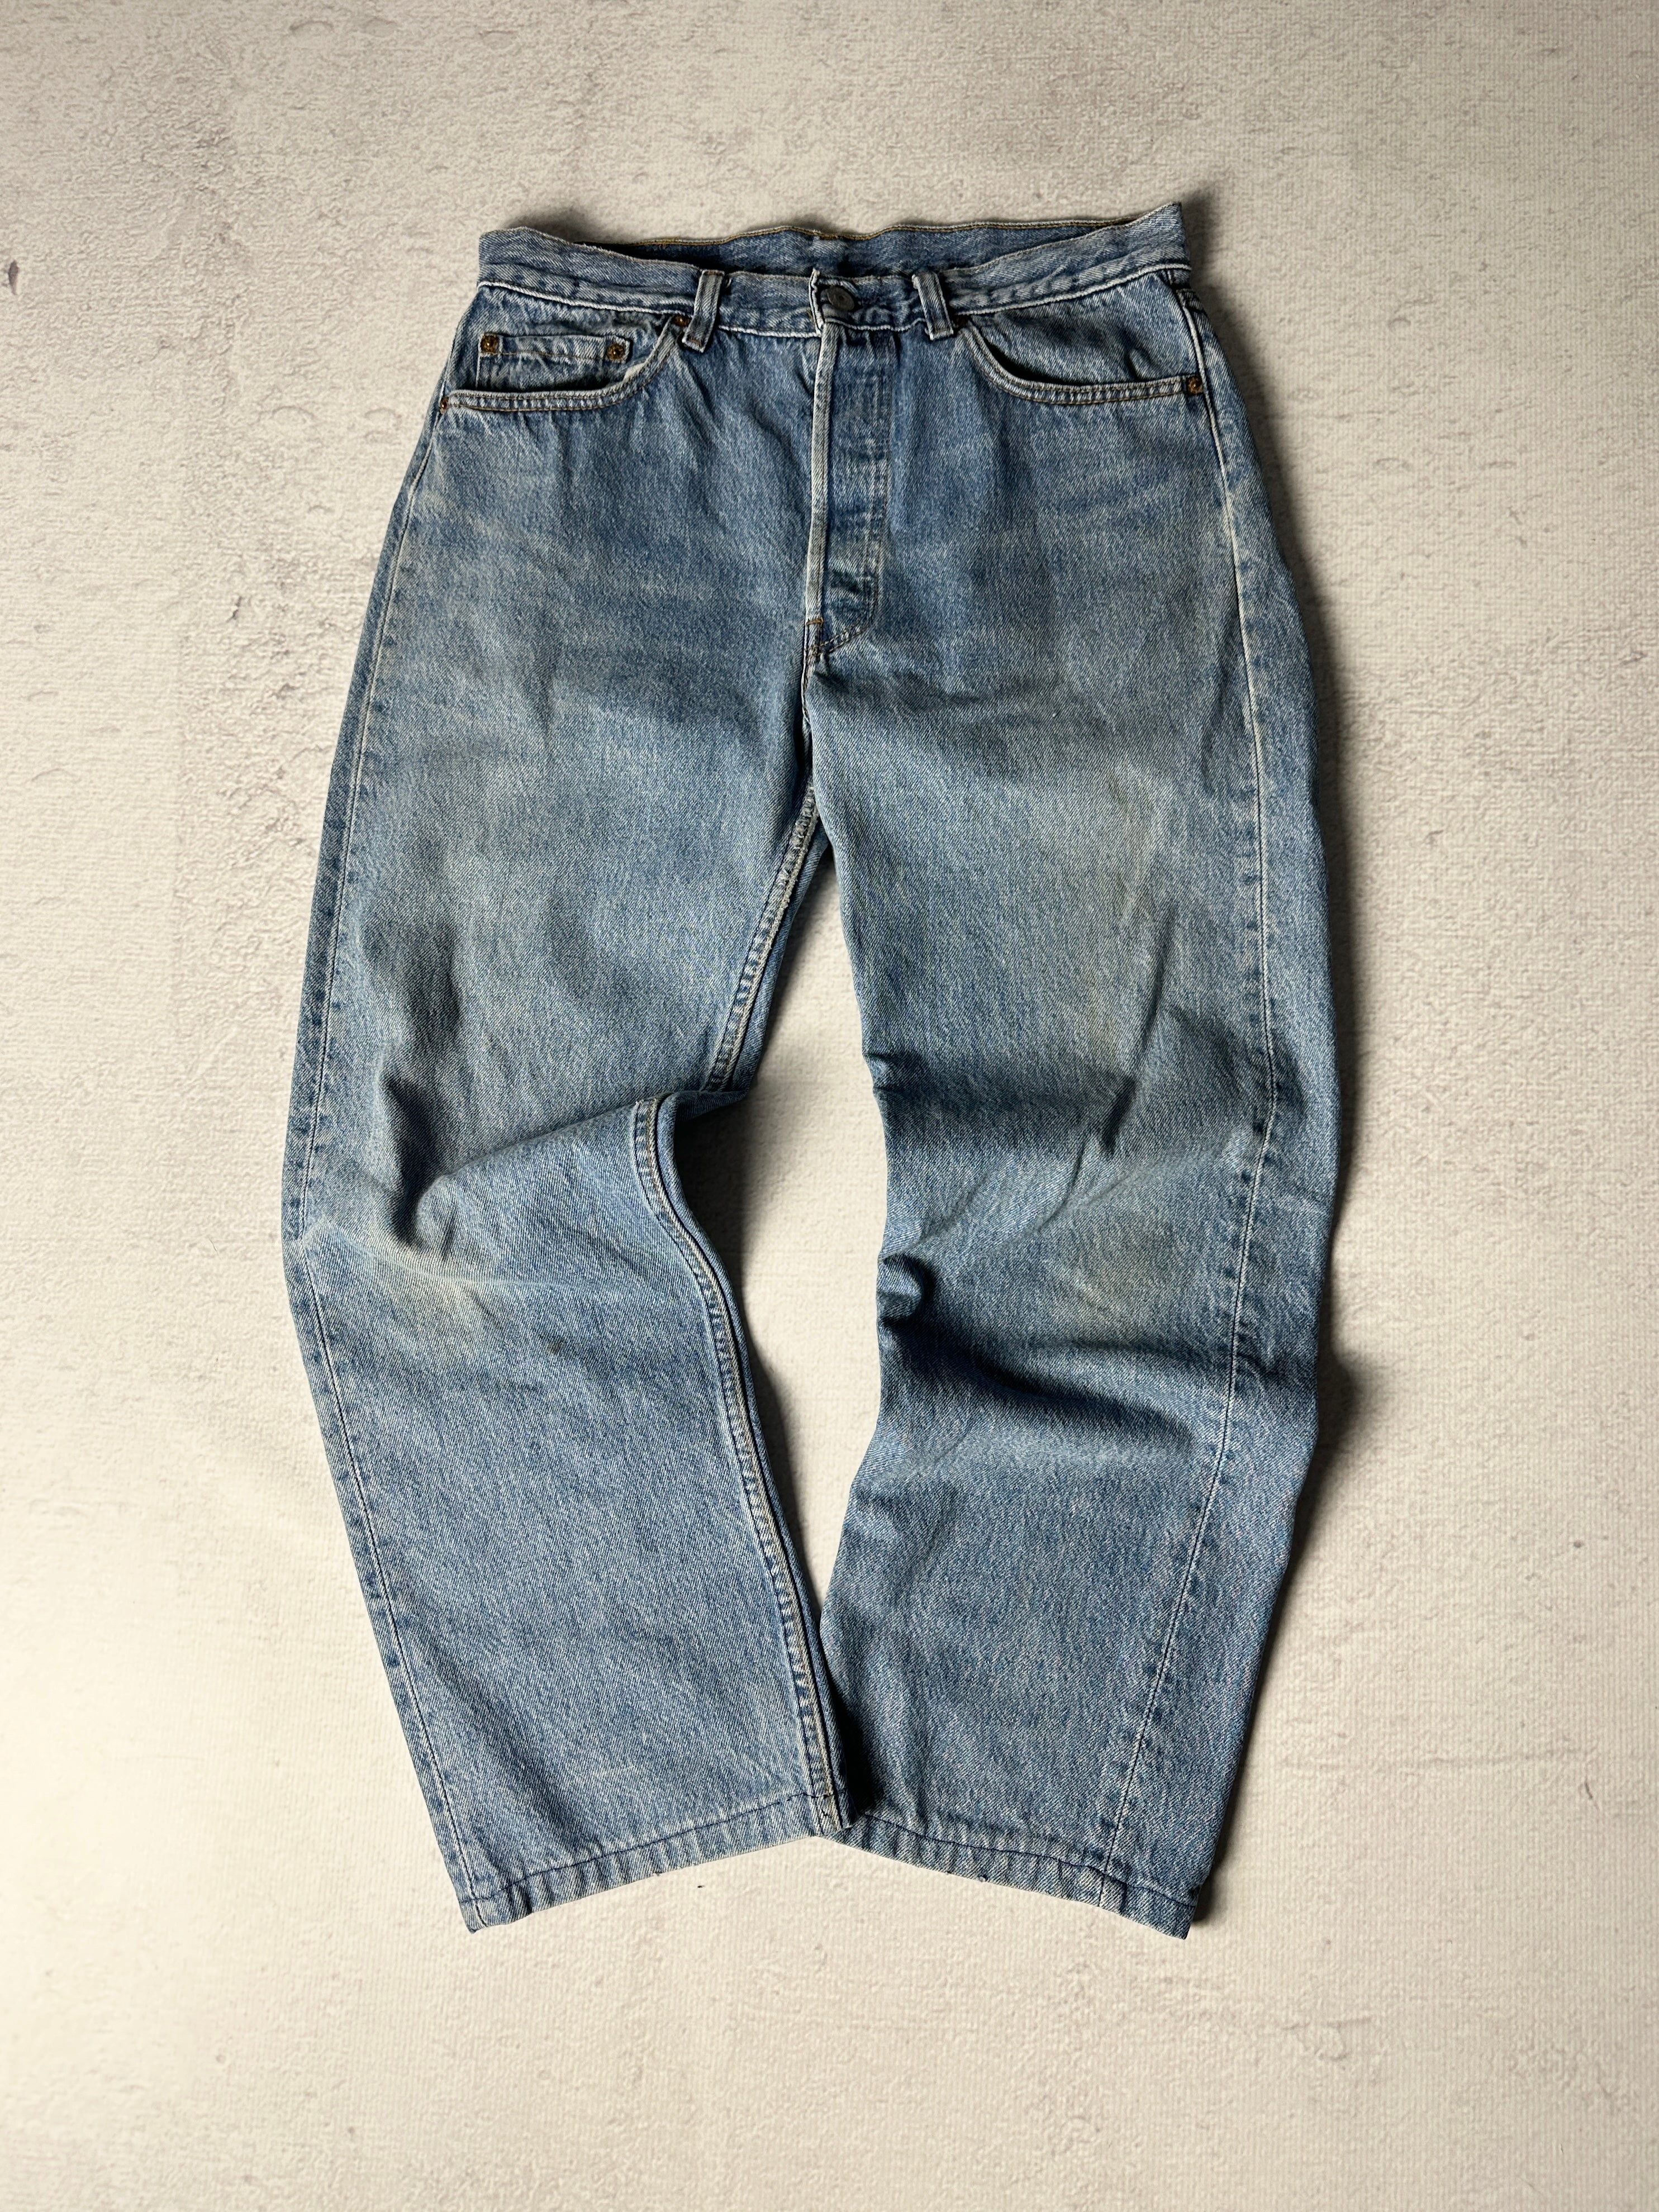 Vintage Levis Jeans - Women's 32W28L